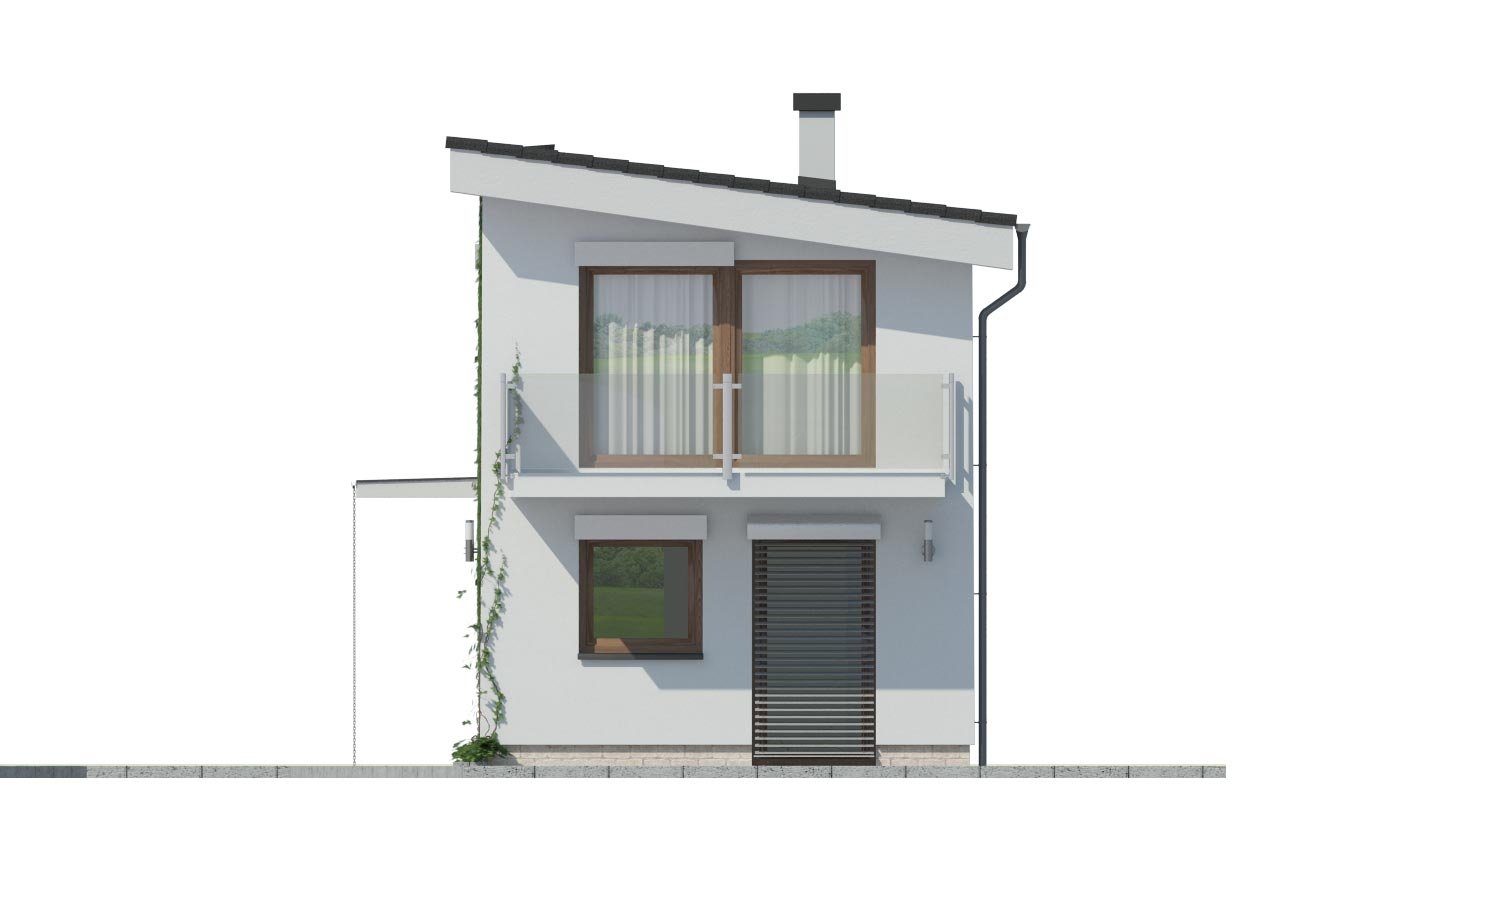 Lacný dom na úzky pozemok s nízkou pultovou strechou, vhodný aj ako záhradný domček.